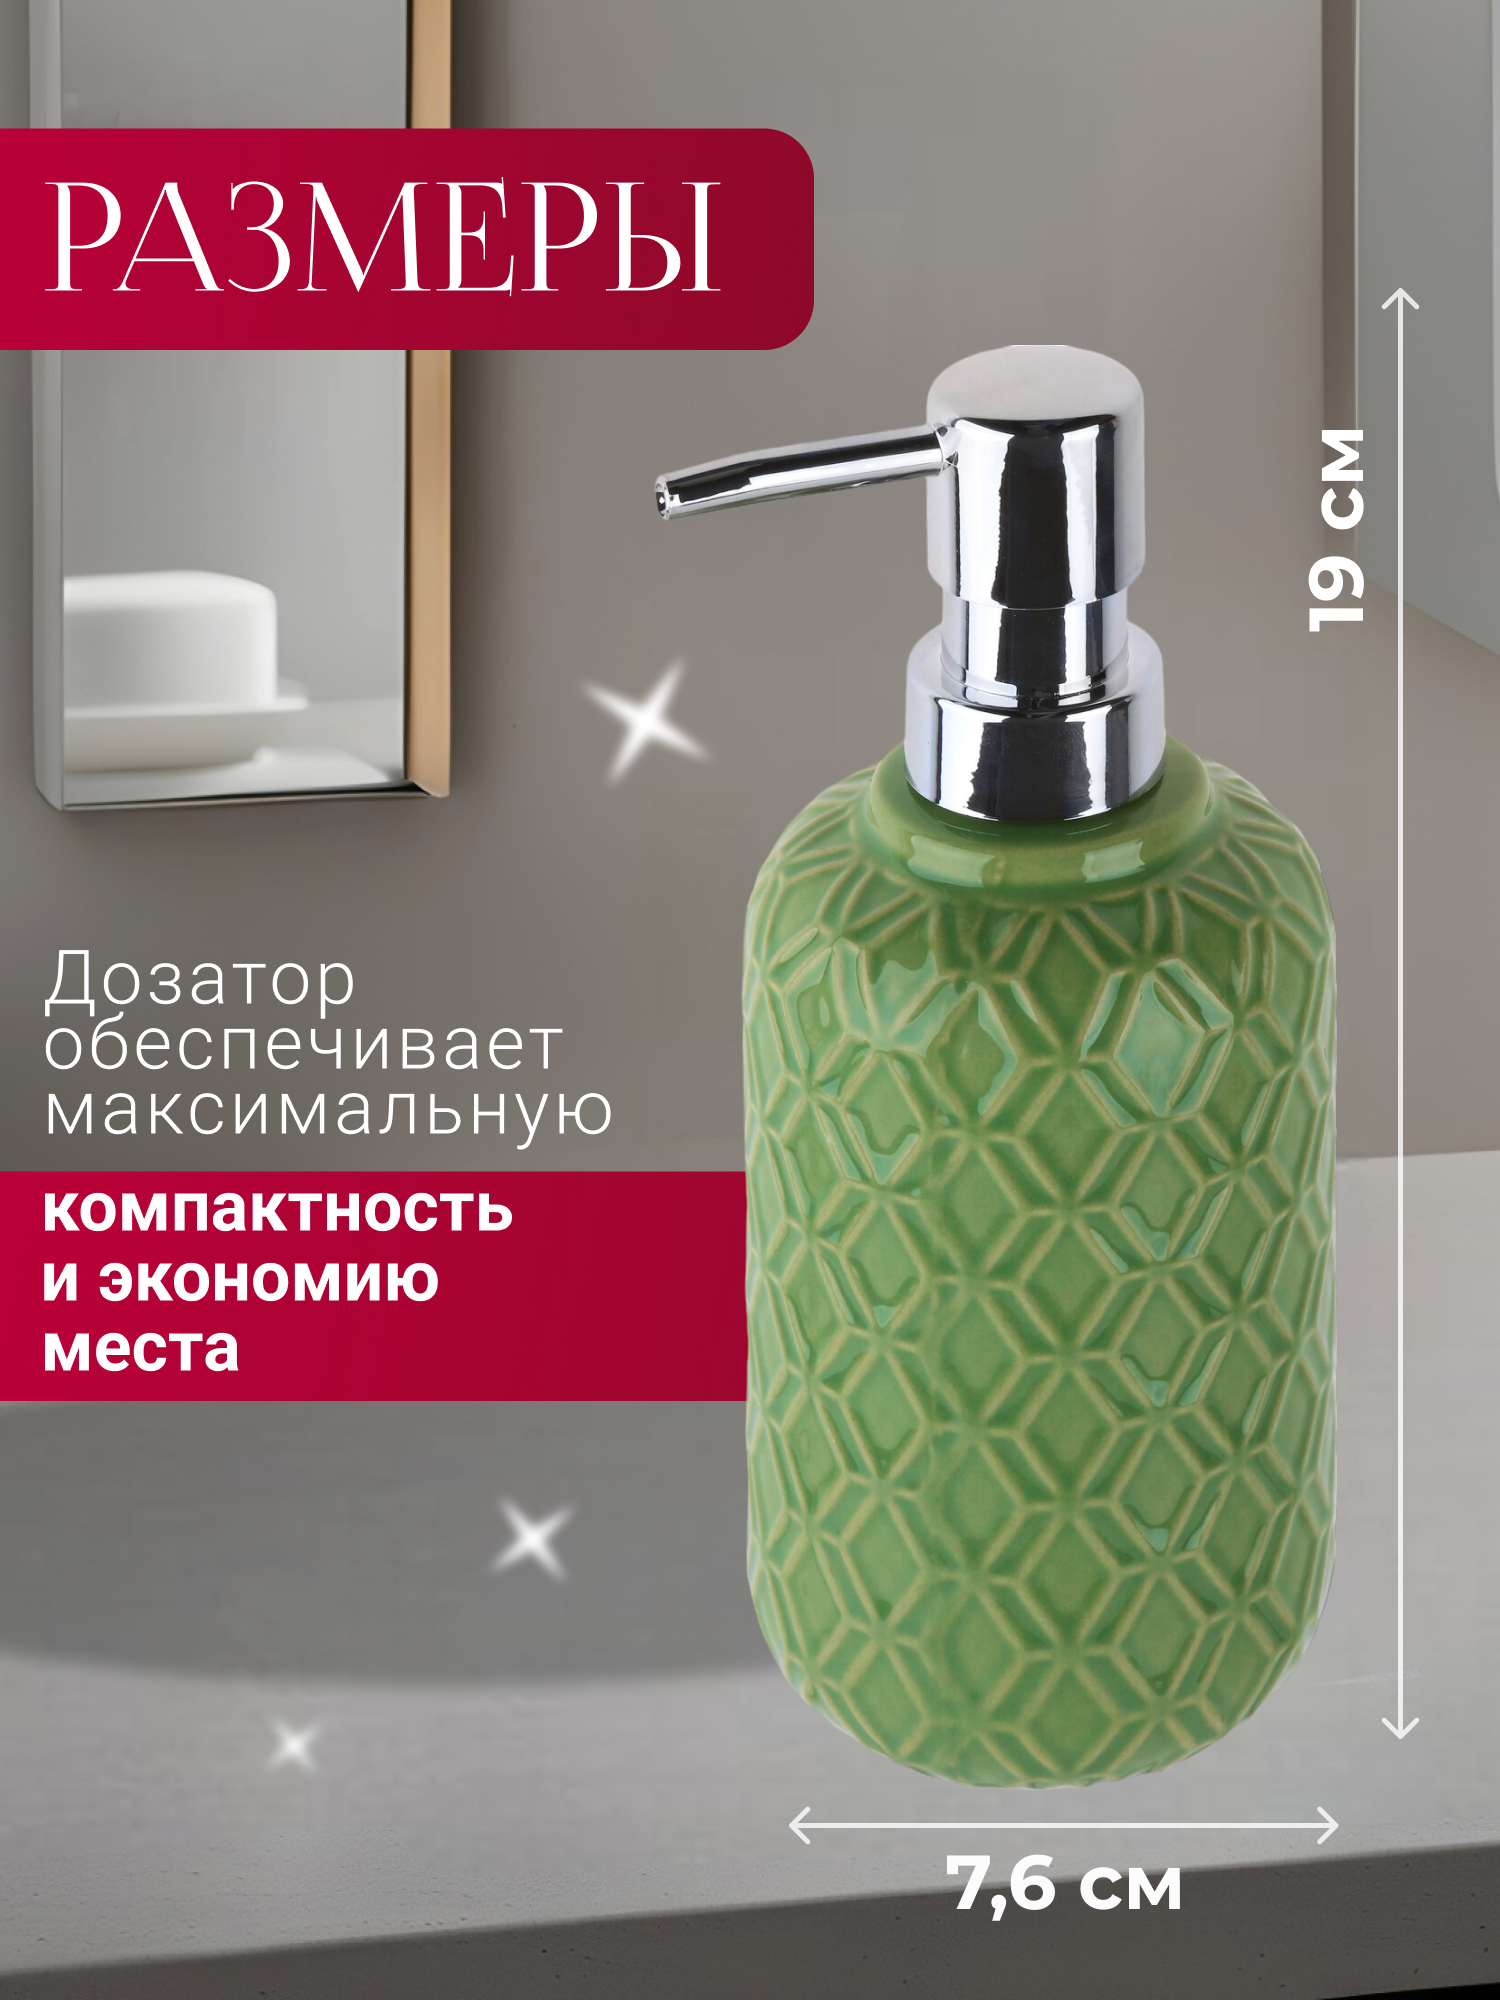 Дозатор для жидкого мыла PERFECTO LINEA Oasis зеленый (35-757001)